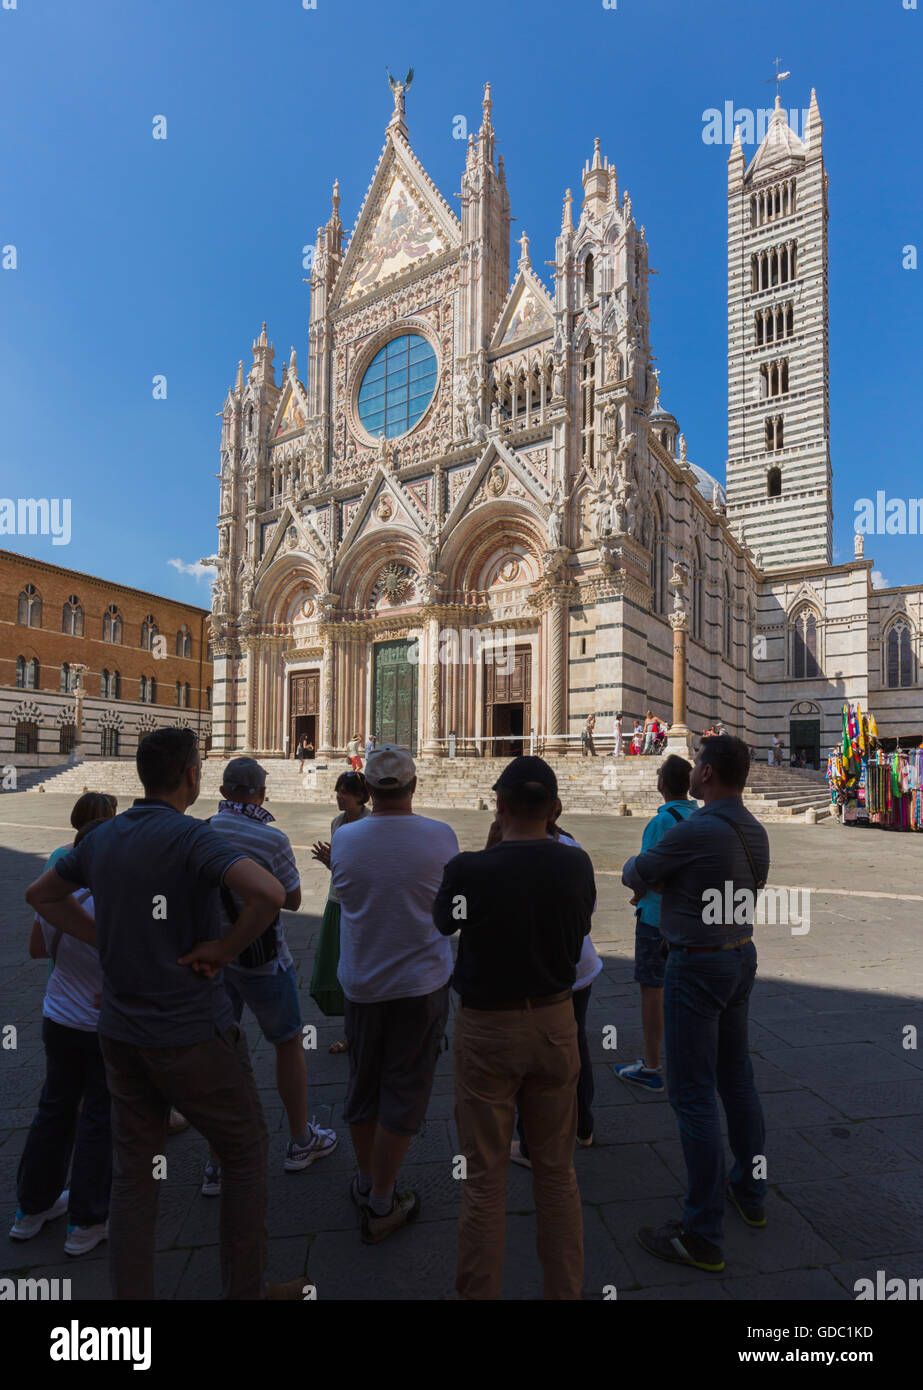 Siena, Provinz Siena, Toskana, Italien.  Die romanisch-gotische Dom oder Kathedrale, gebaut im 13. Jahrhundert. Stockfoto